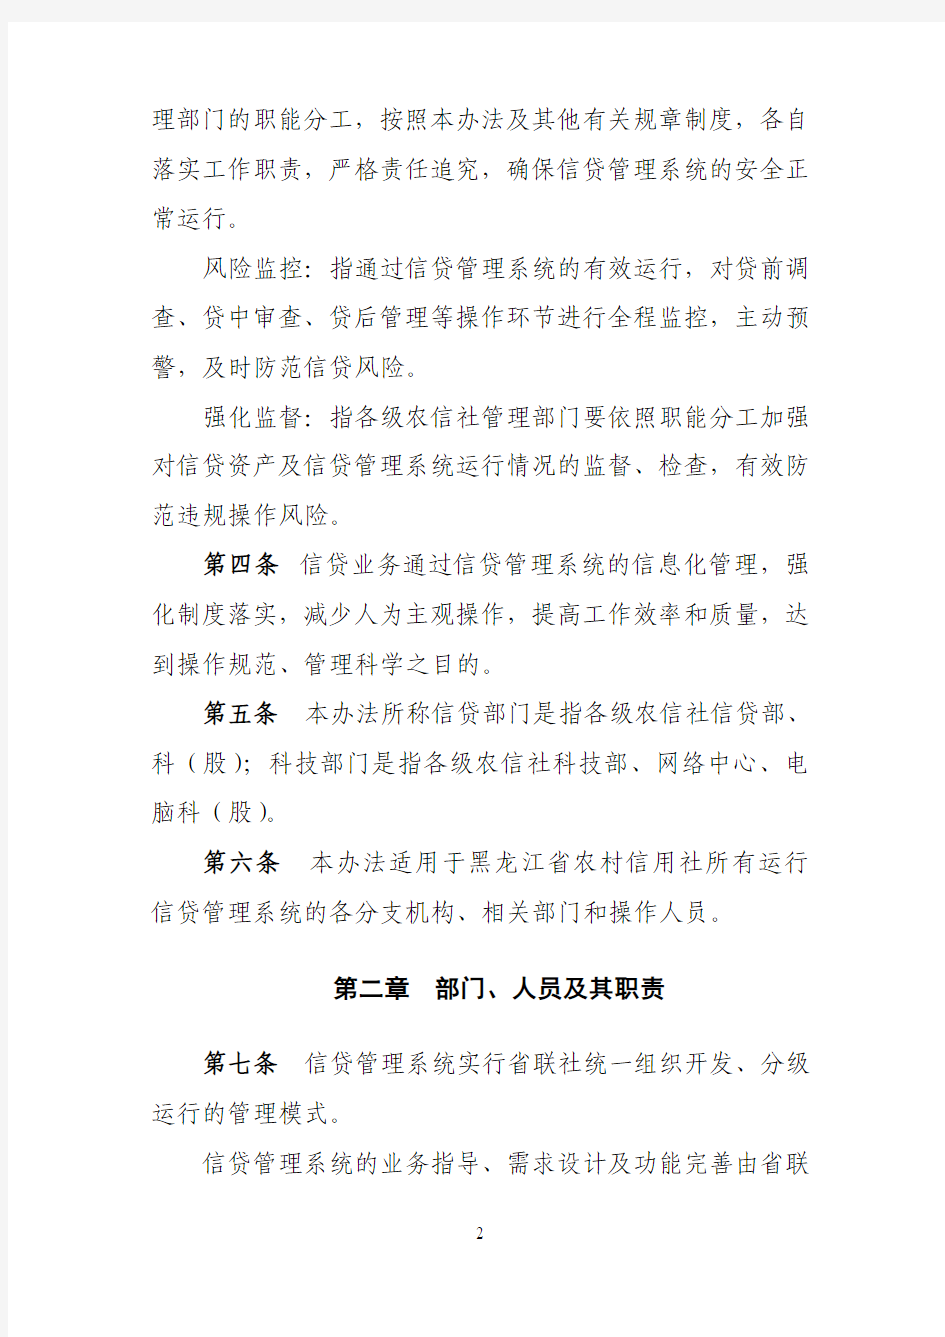 黑龙江农村信用社信贷管理系统管理办法(试行)